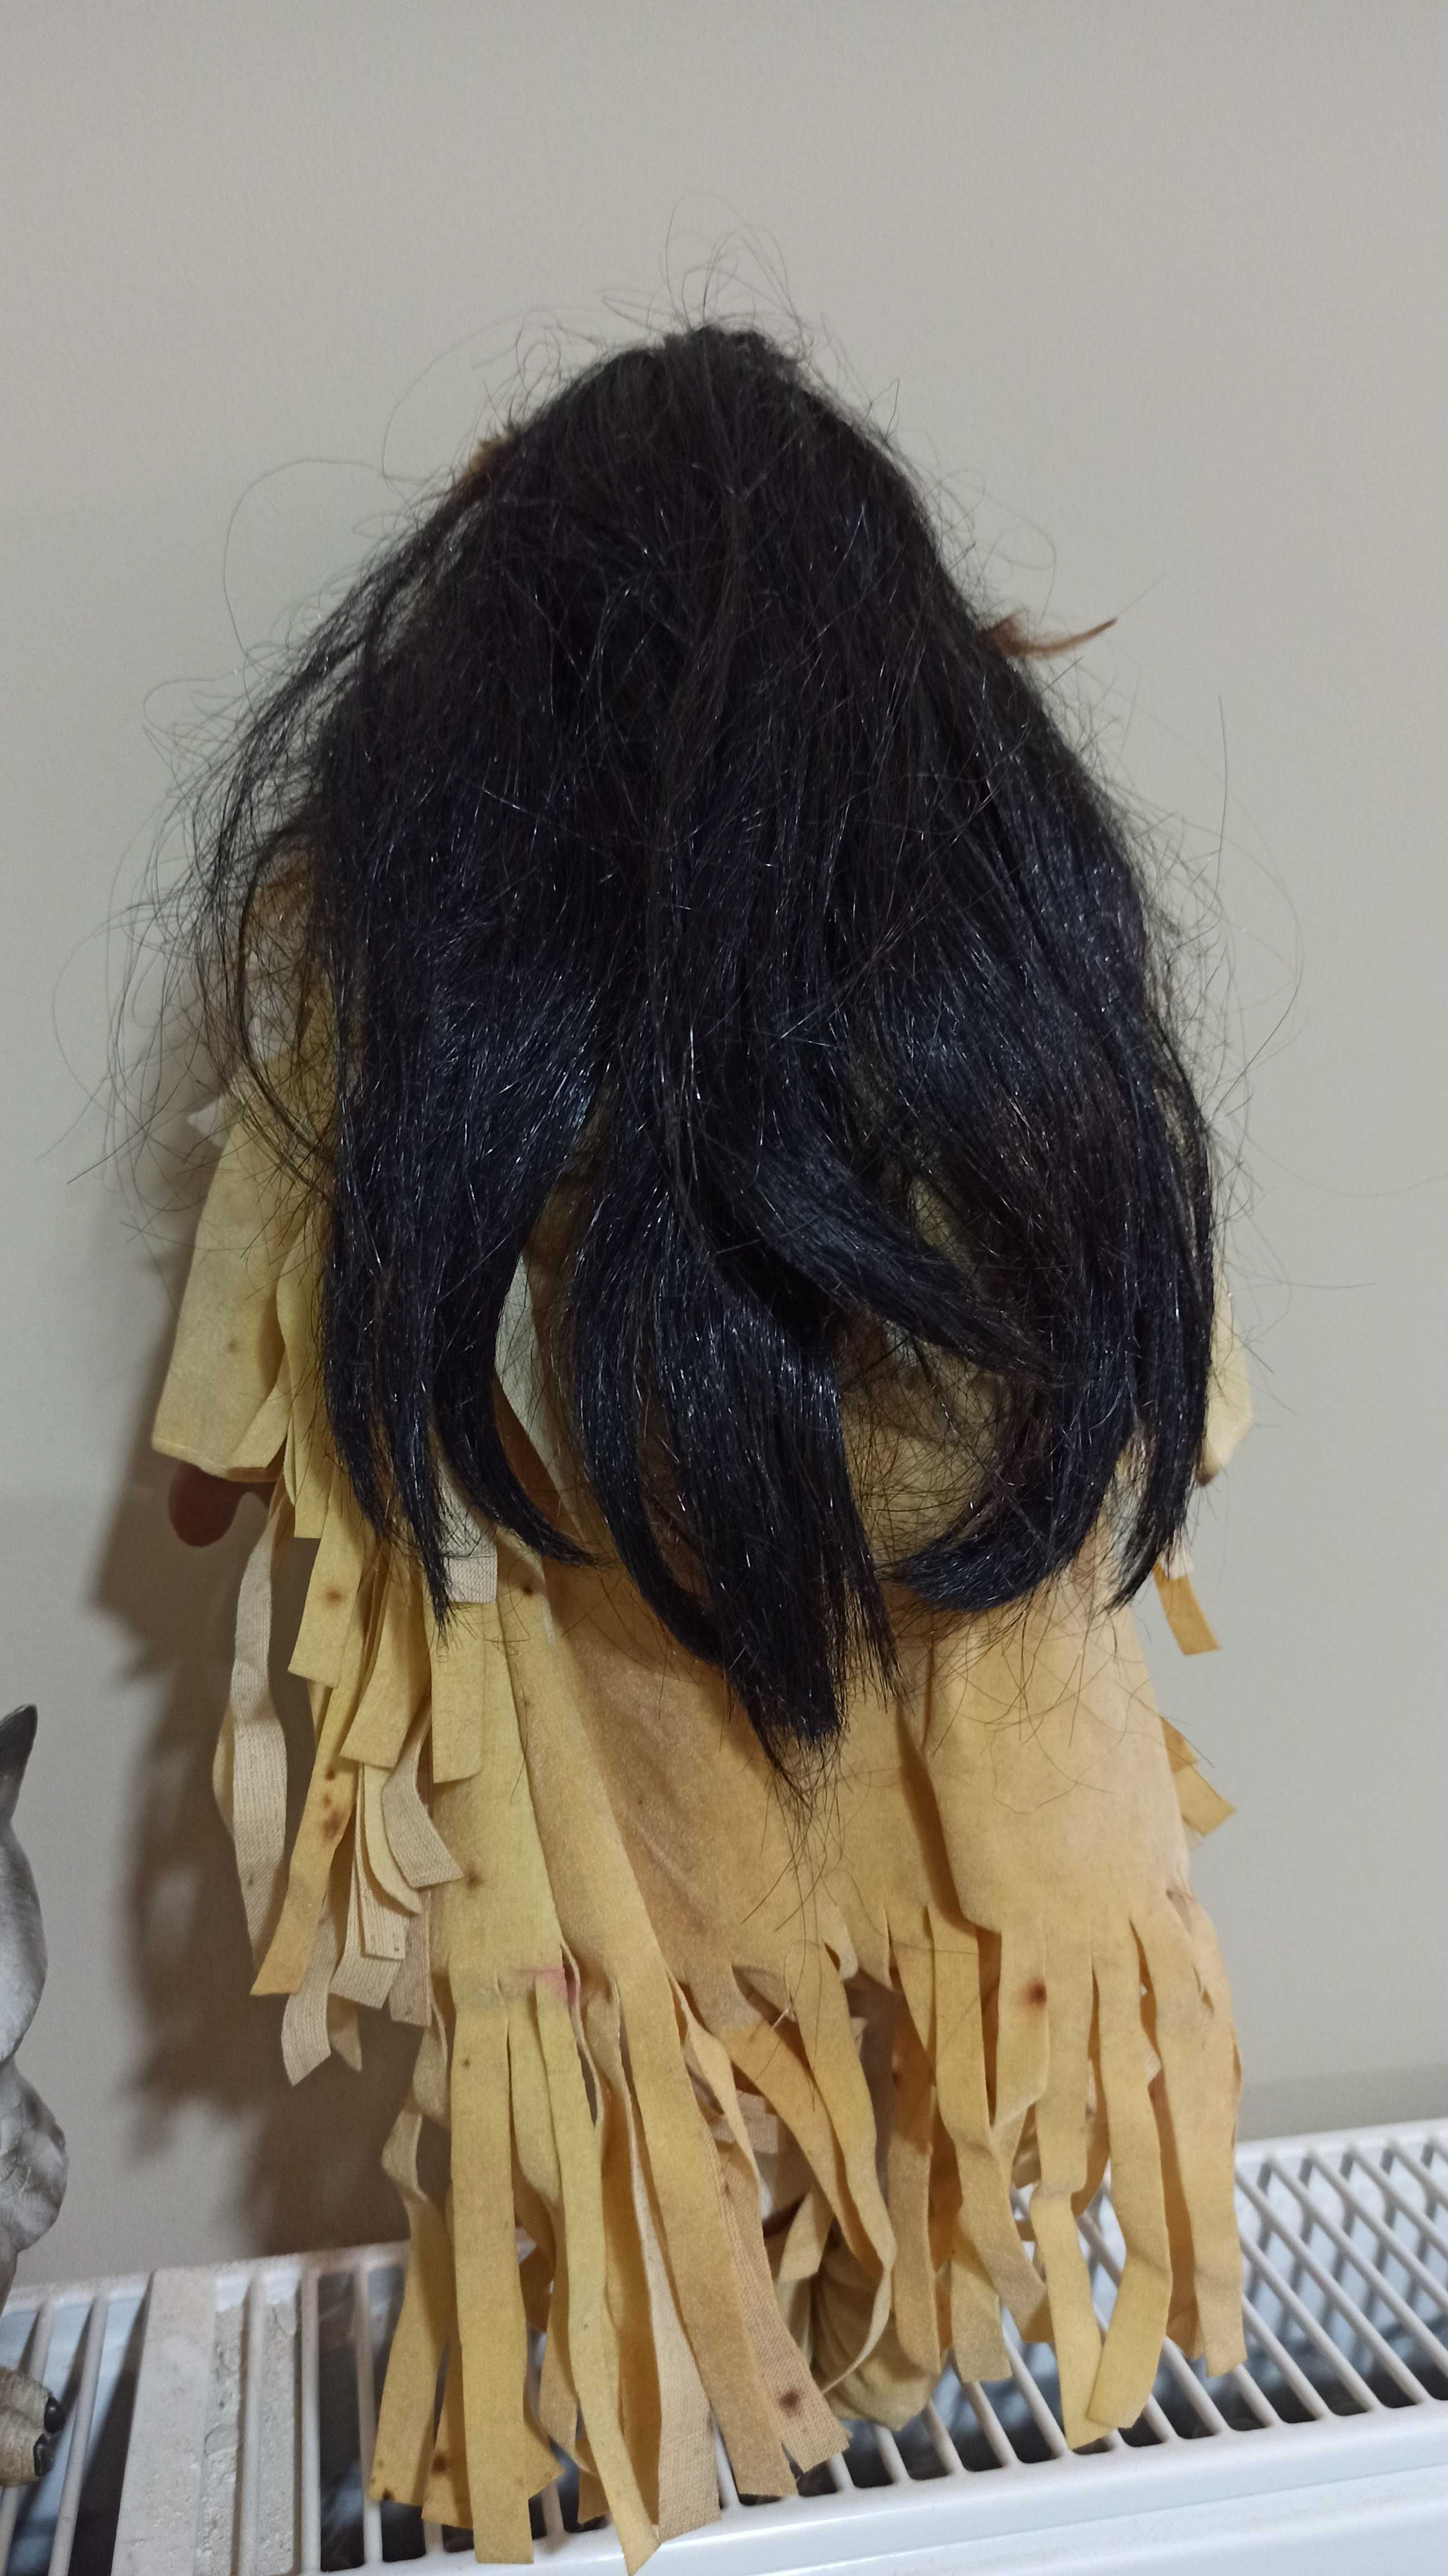 Коллекционная фарфоровая кукла Индианка (38 см).